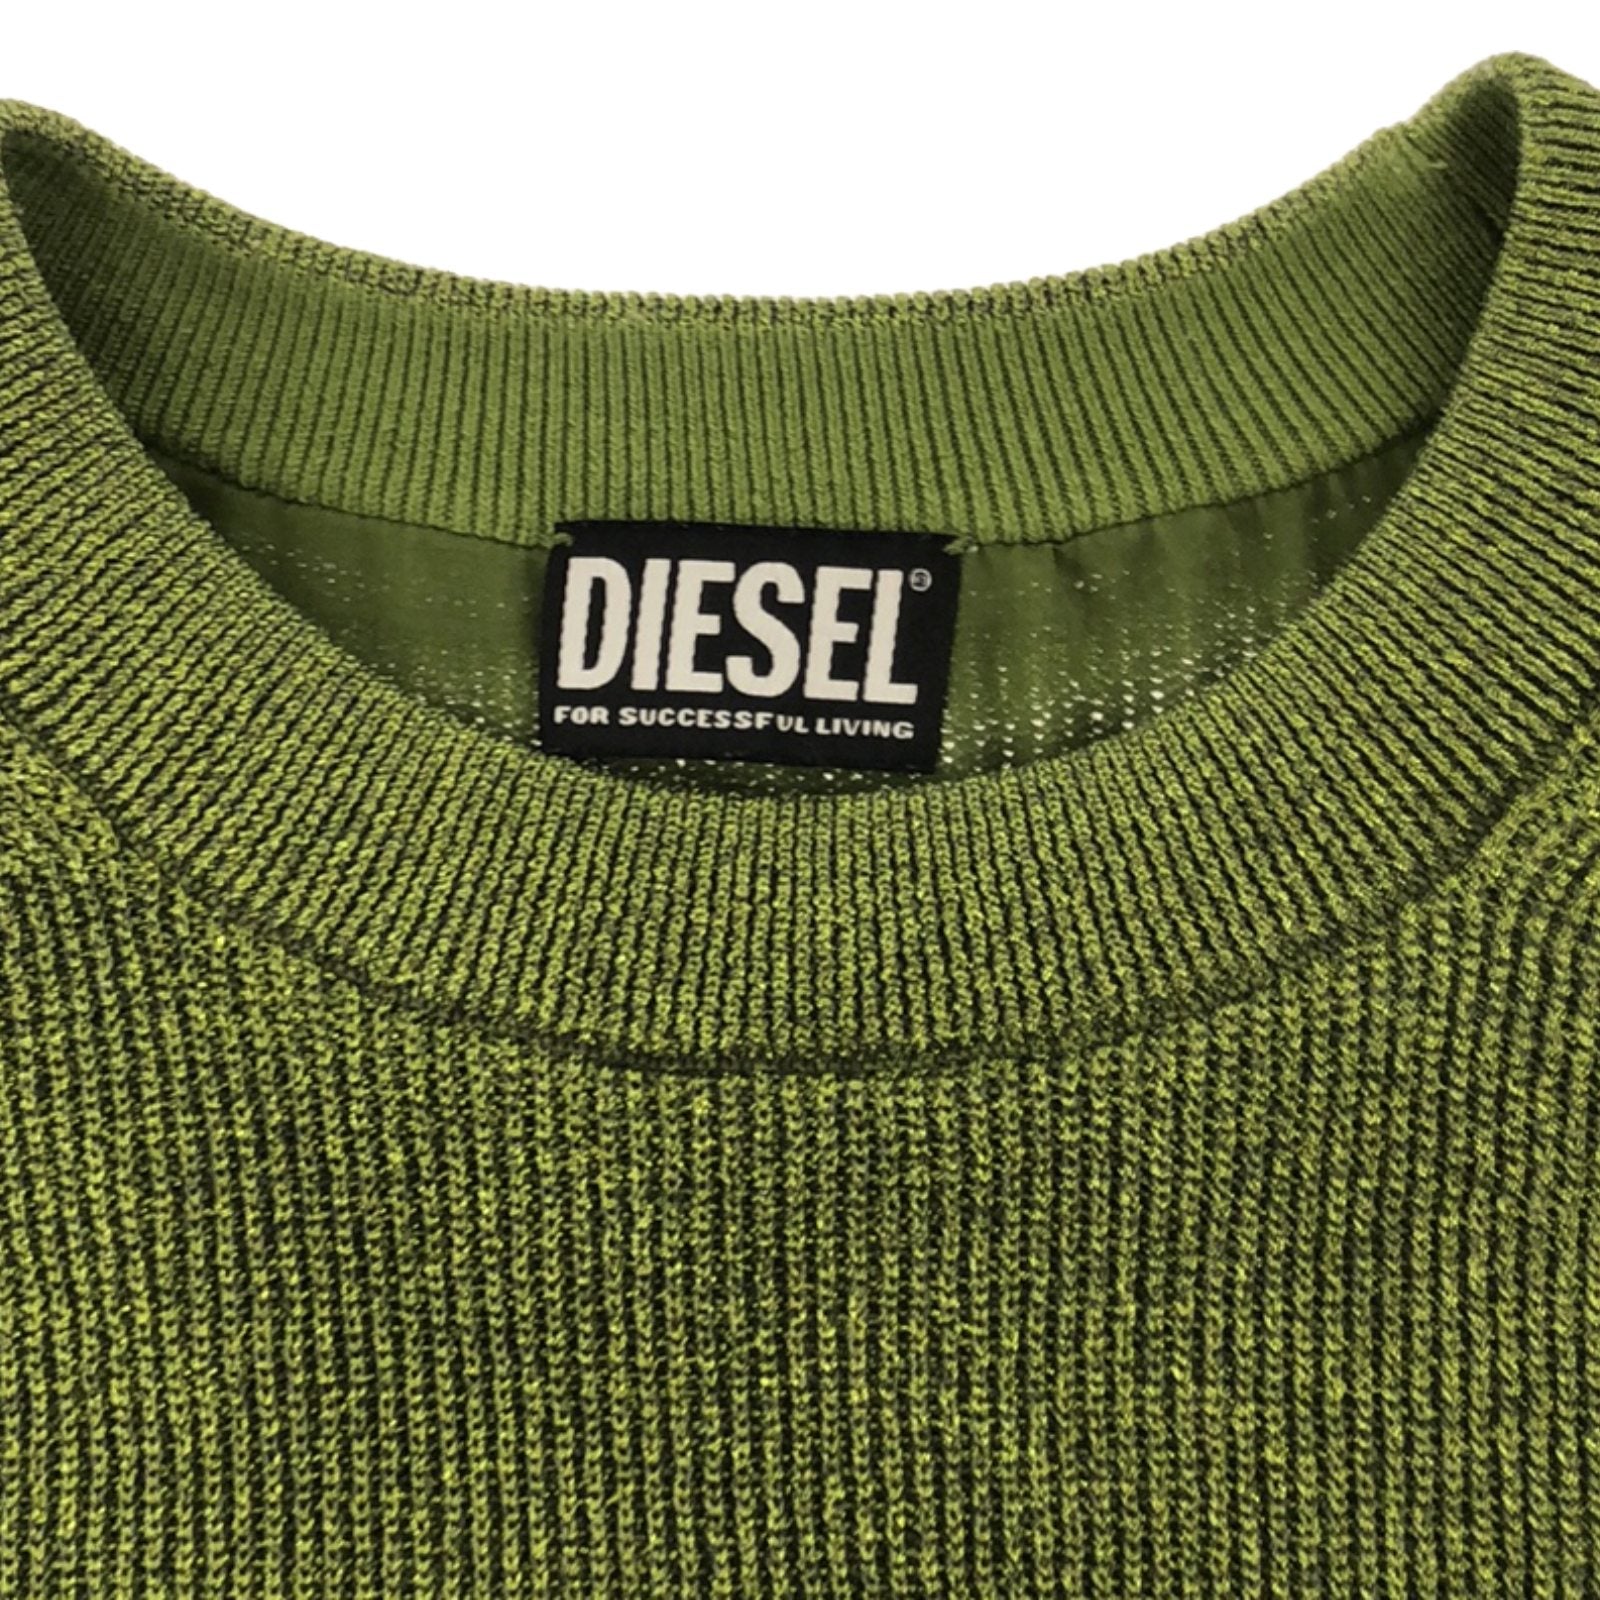 Diesel Diesel One Earrings One Piece Clothing Tops Polyester  Green